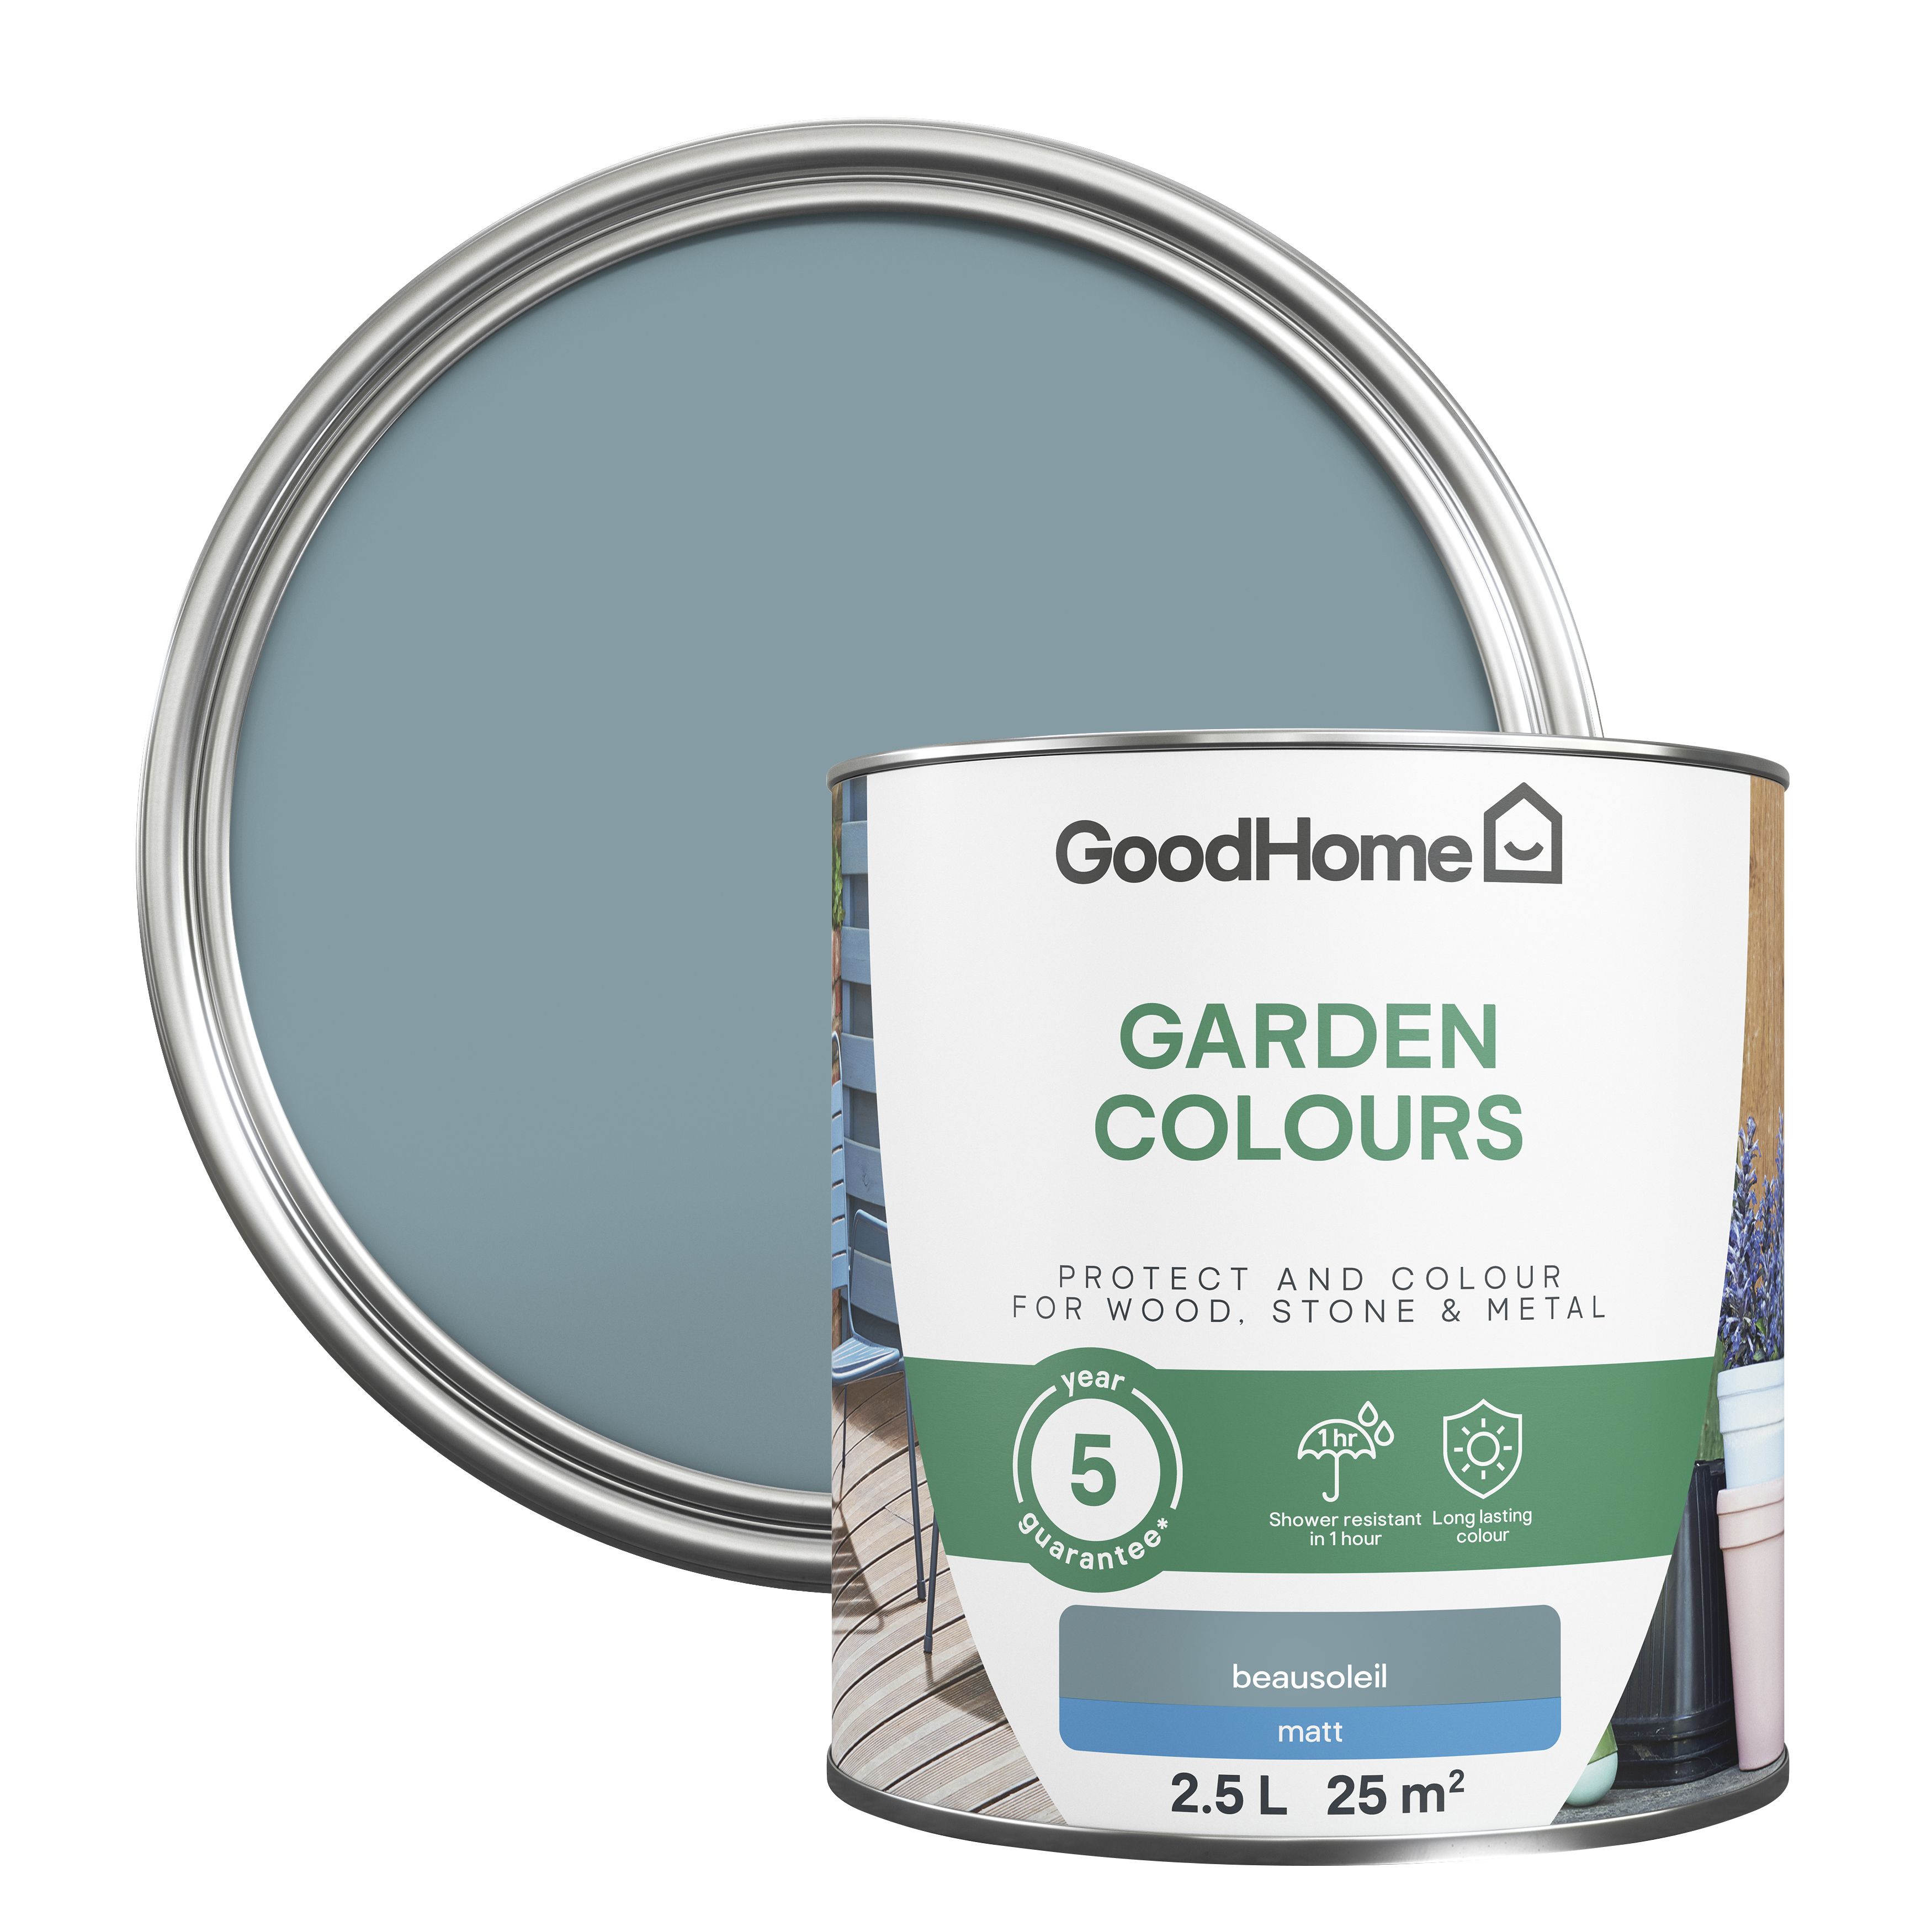 GoodHome Colour It Beausoleil Matt Multi-surface paint, 2.5L